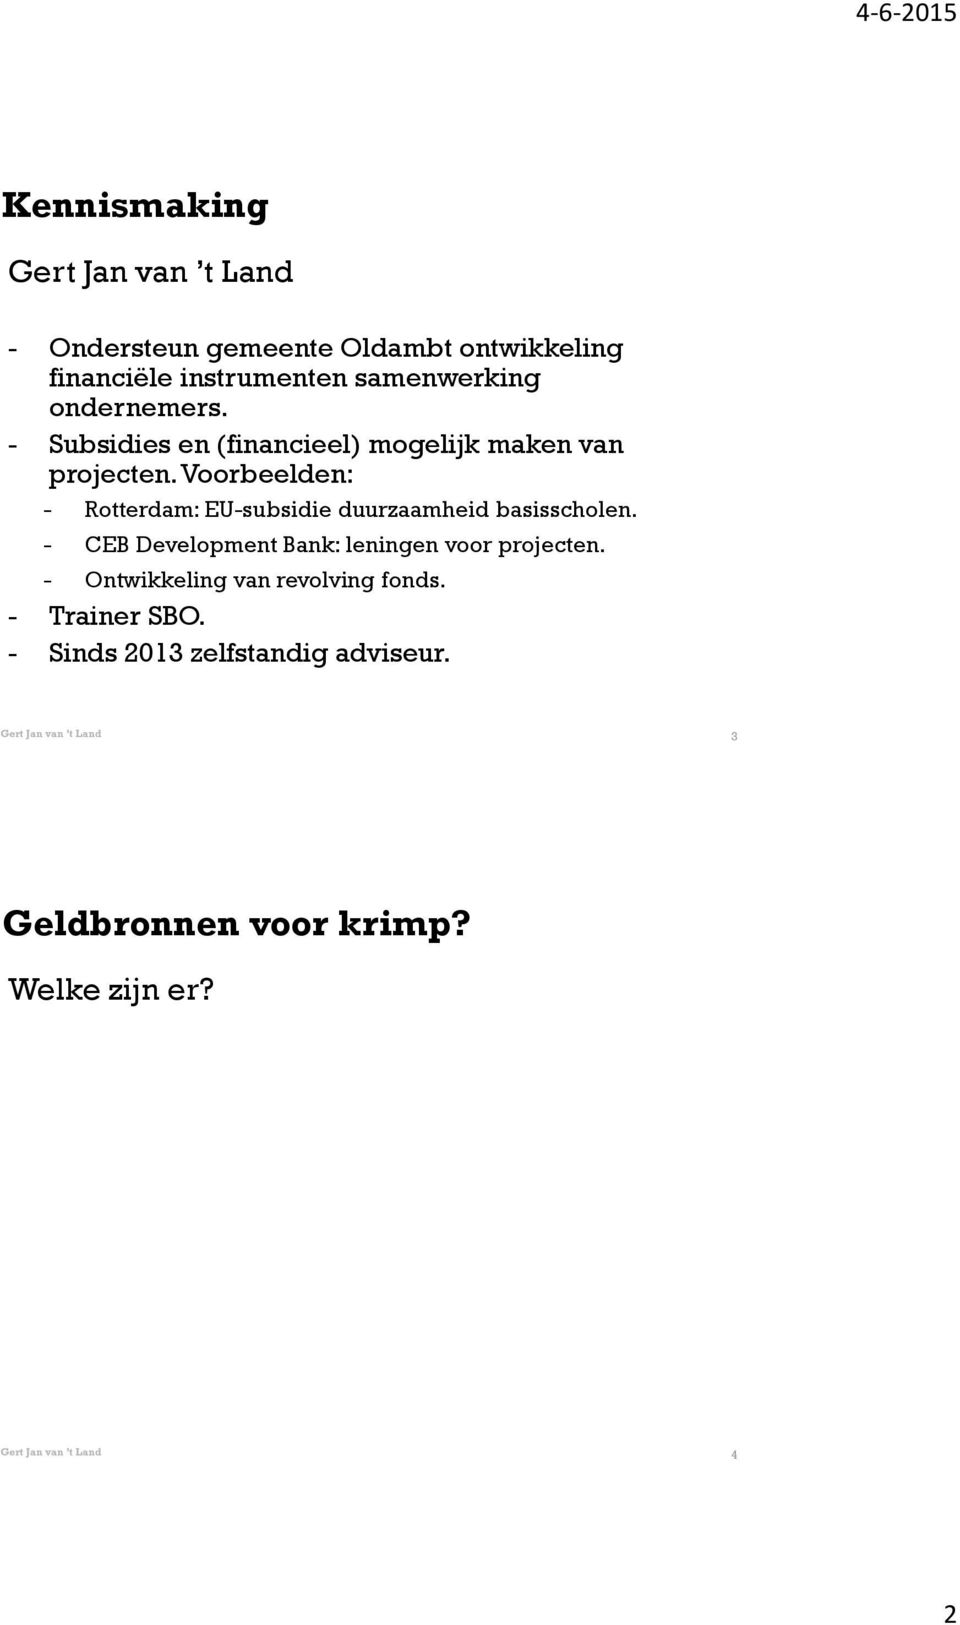 Voorbeelden: - Rotterdam: EU-subsidie duurzaamheid basisscholen.